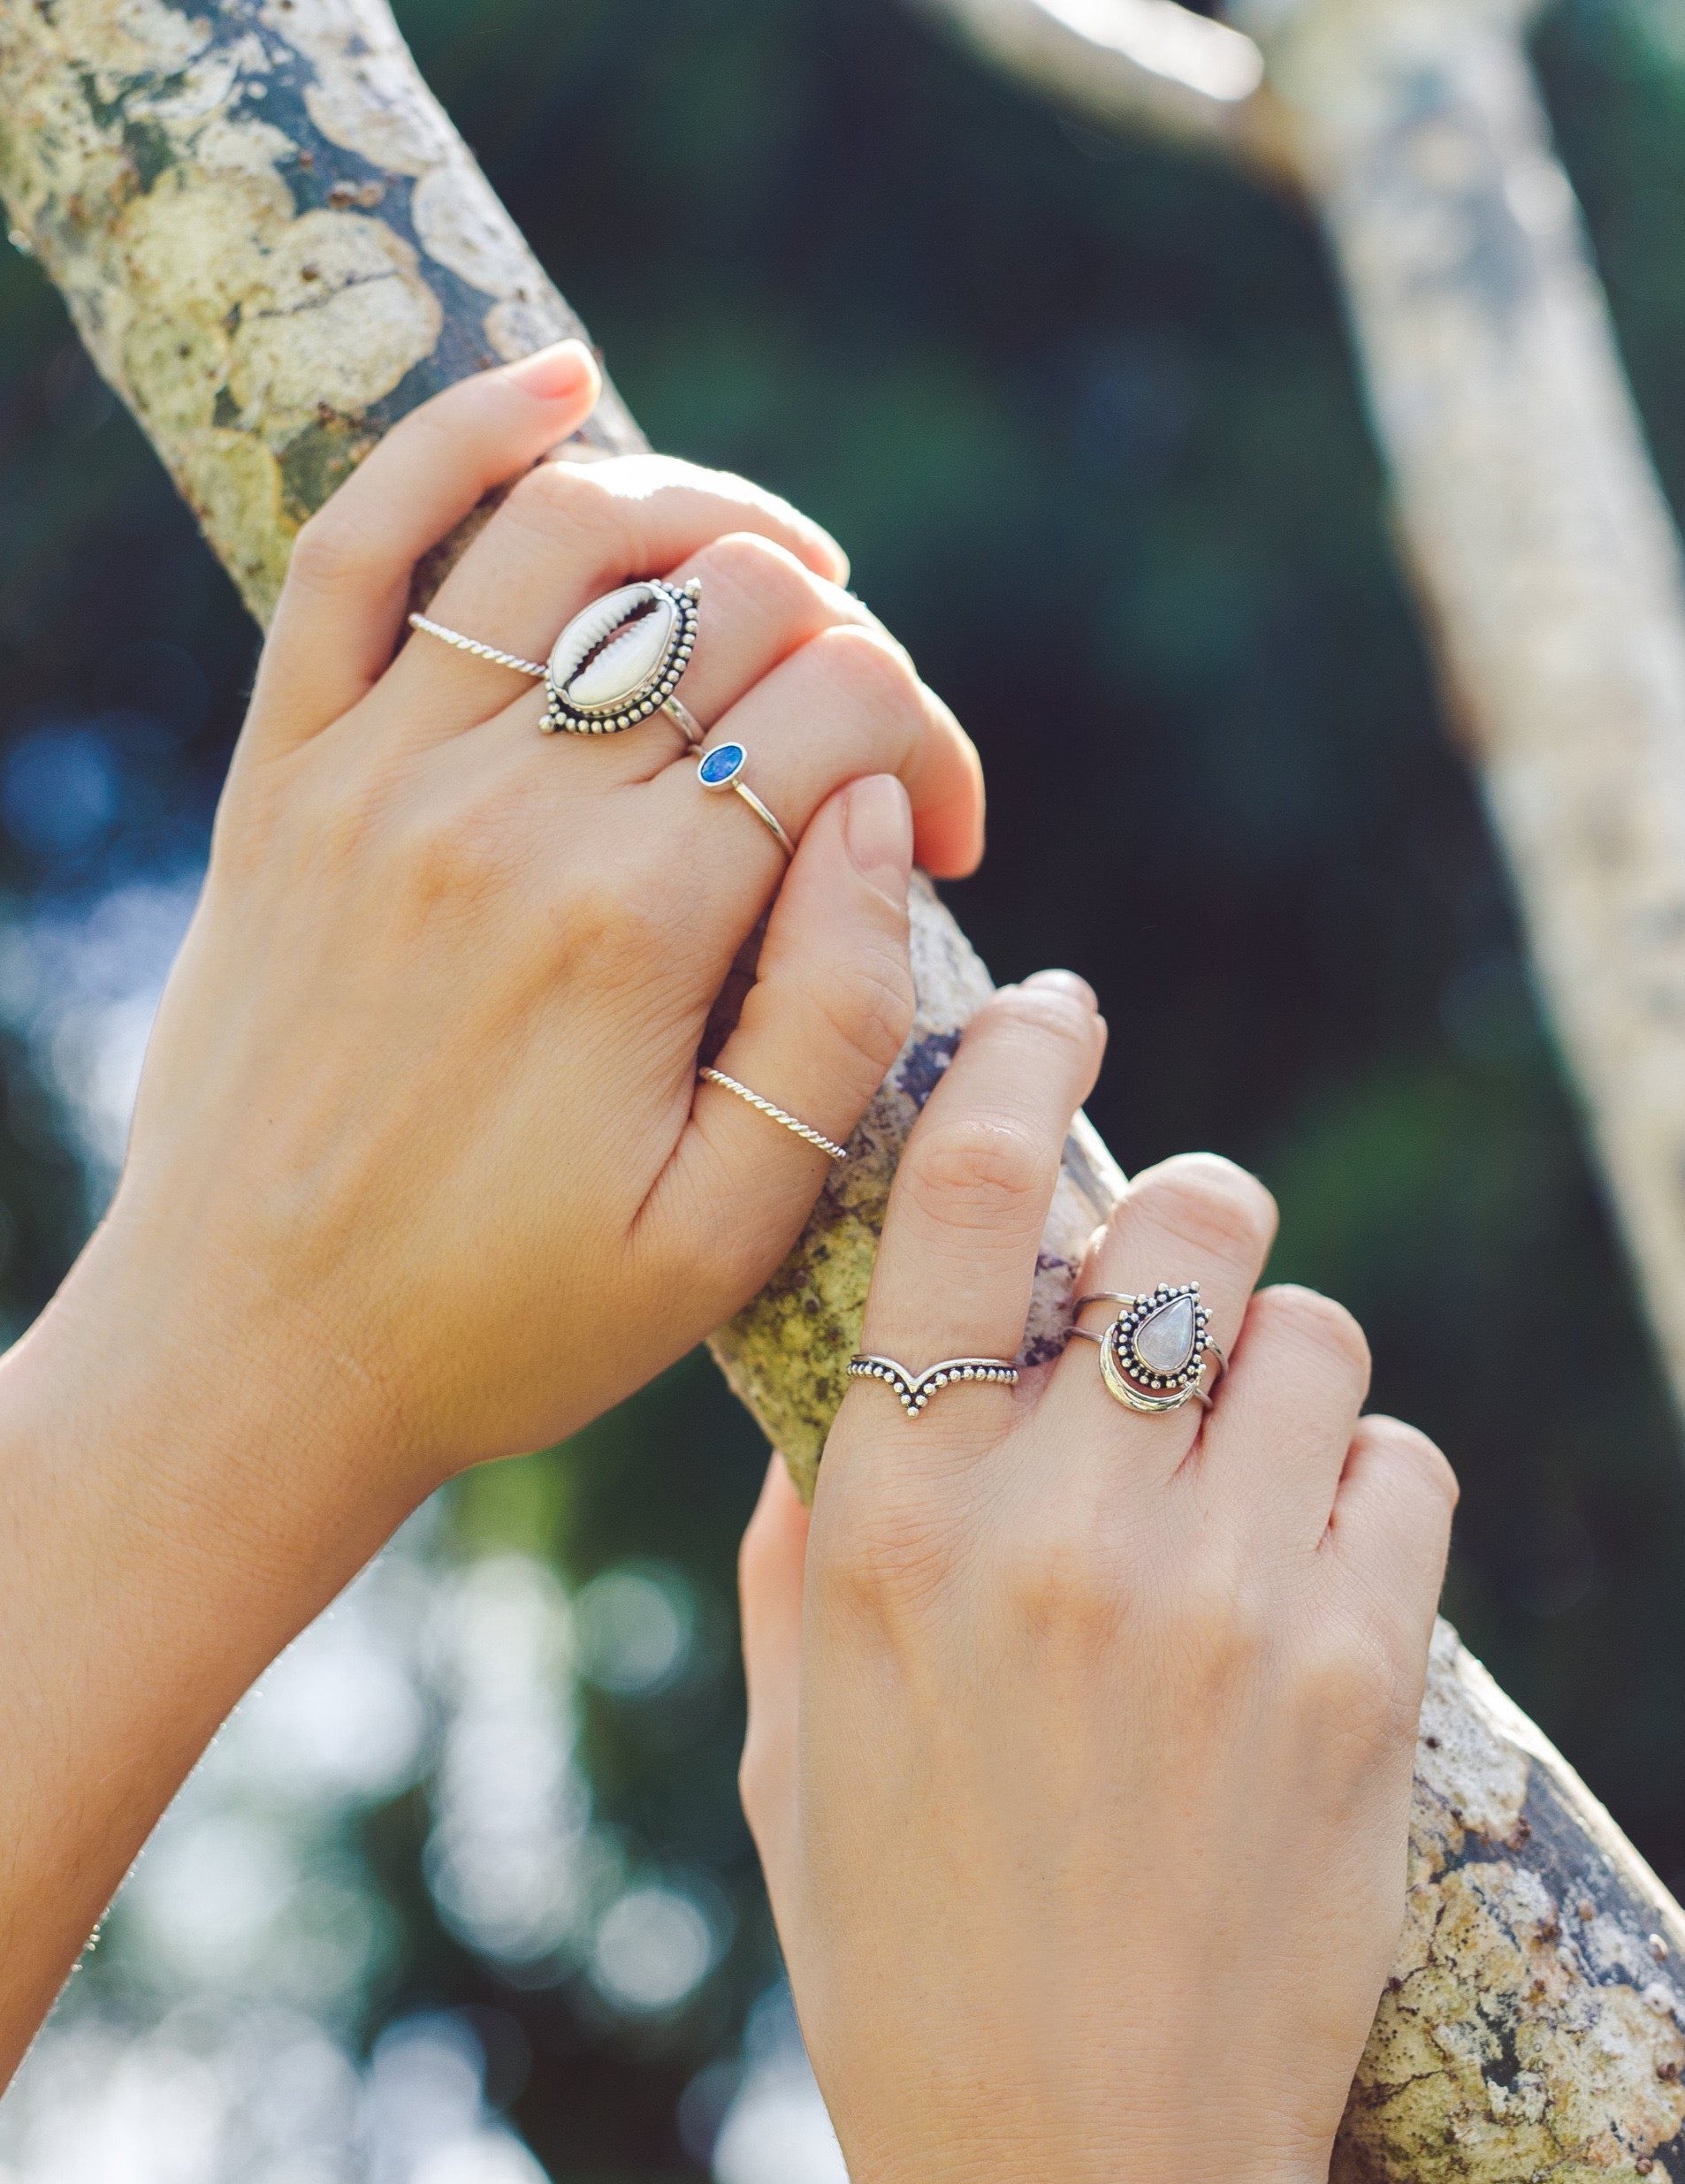 Handmade with love | VERLAN Jewellery | Fairfashion | Handgemachte Ringe im Boho Look aus Bali | Fair und nachhaltig handgefertigter Schmuck | Silberring mit Opal | 925 Silber